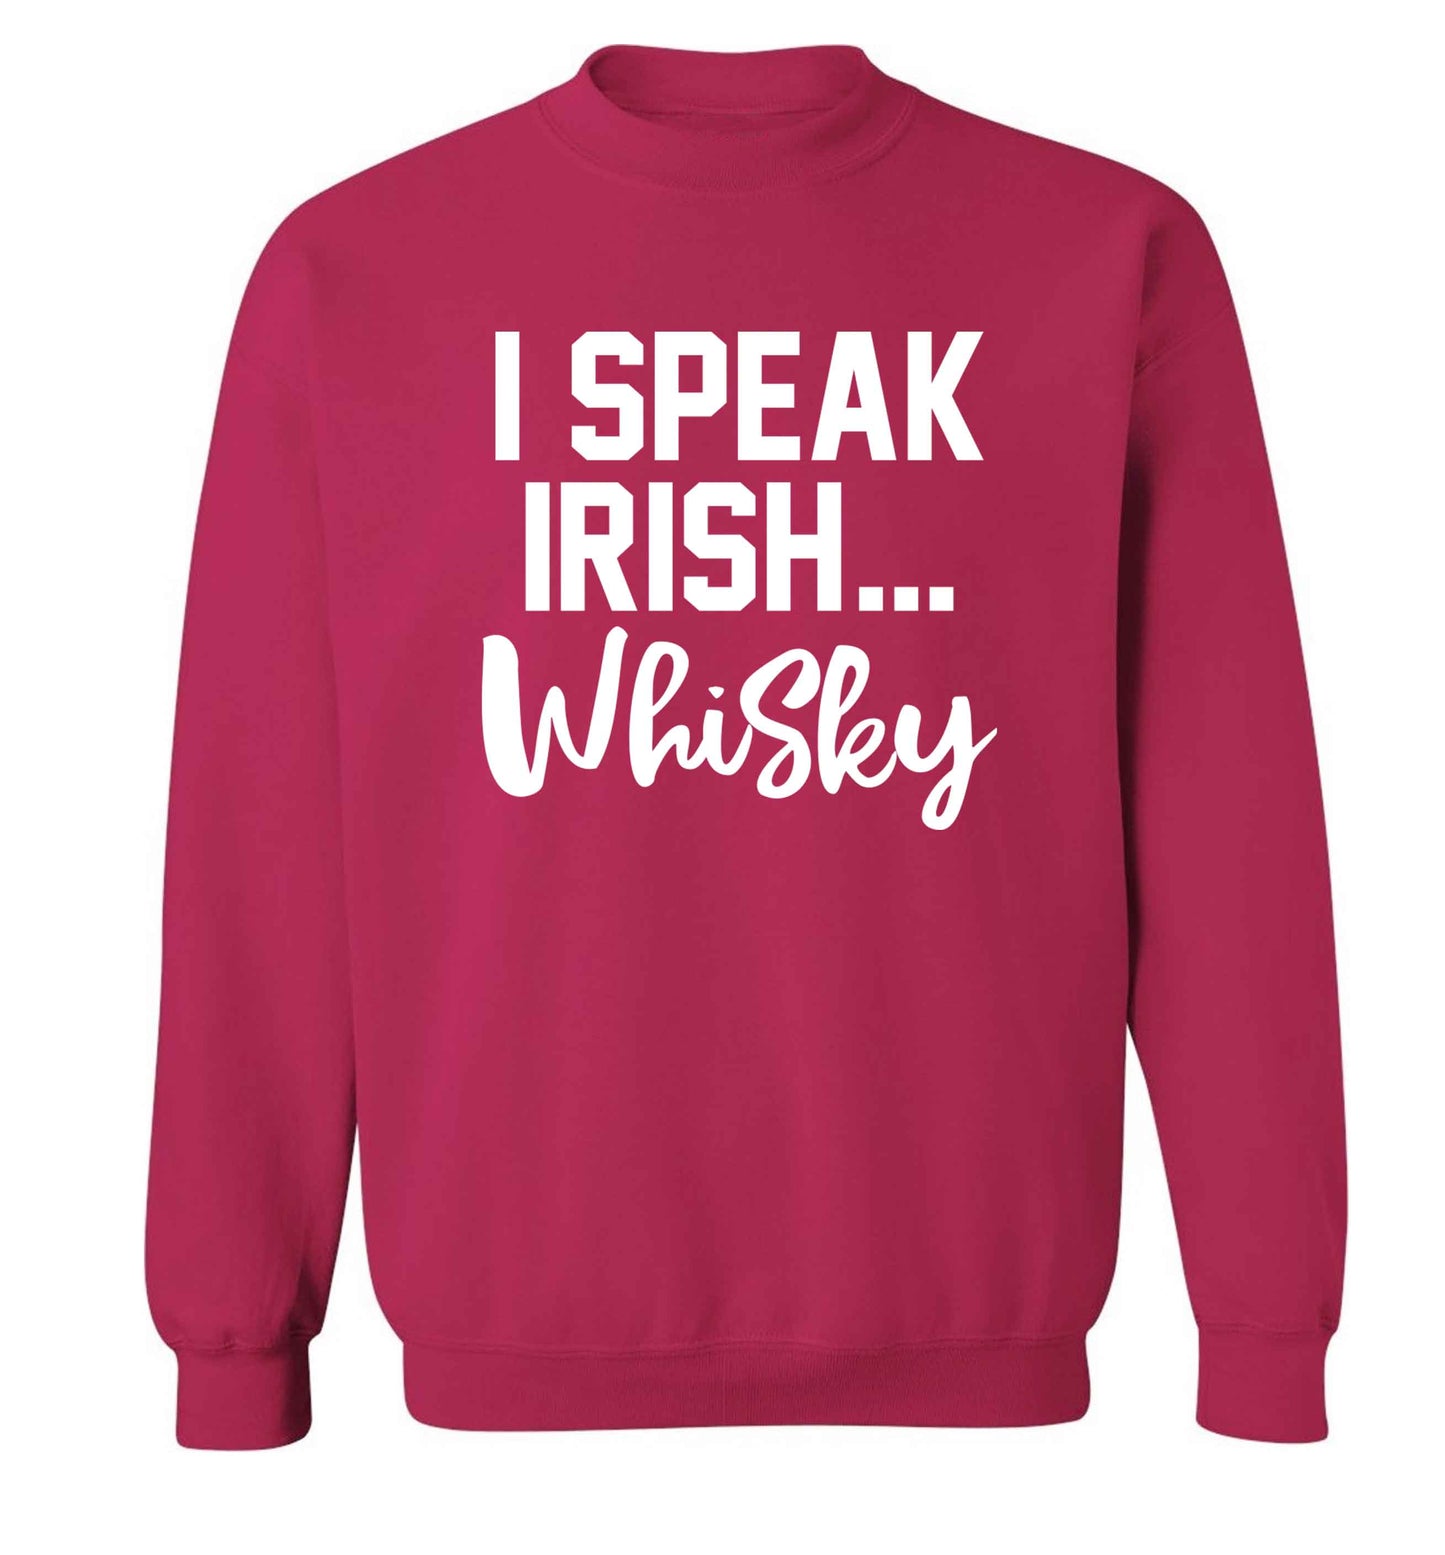 I speak Irish whisky adult's unisex pink sweater 2XL